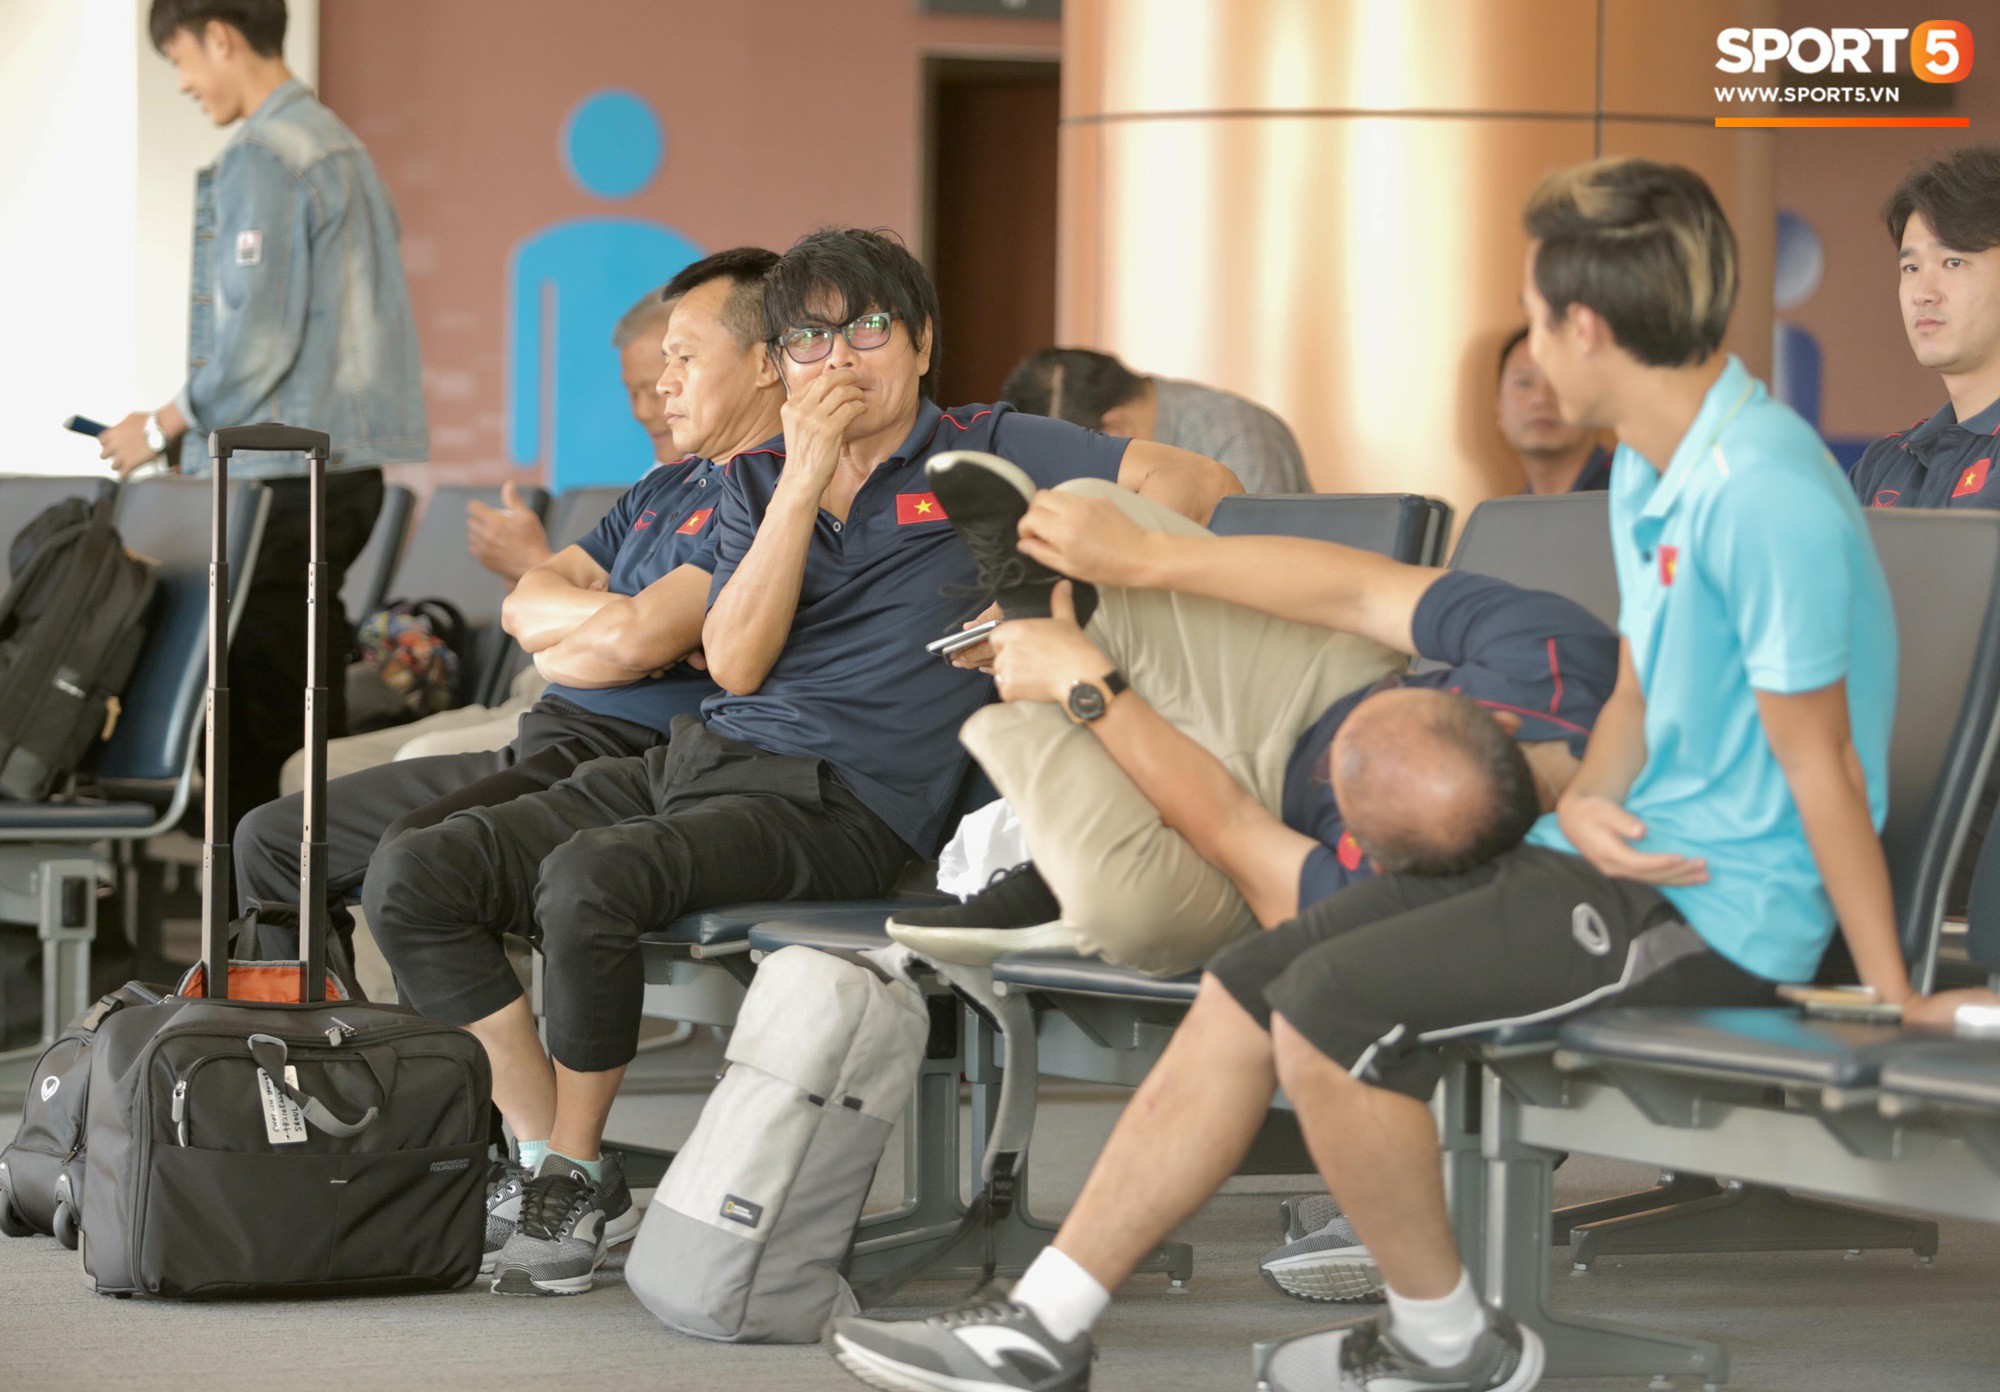 HLV Park Hang-seo gối đầu lên đùi Văn Toàn đầy tình cảm tại sân bay - Ảnh 3.